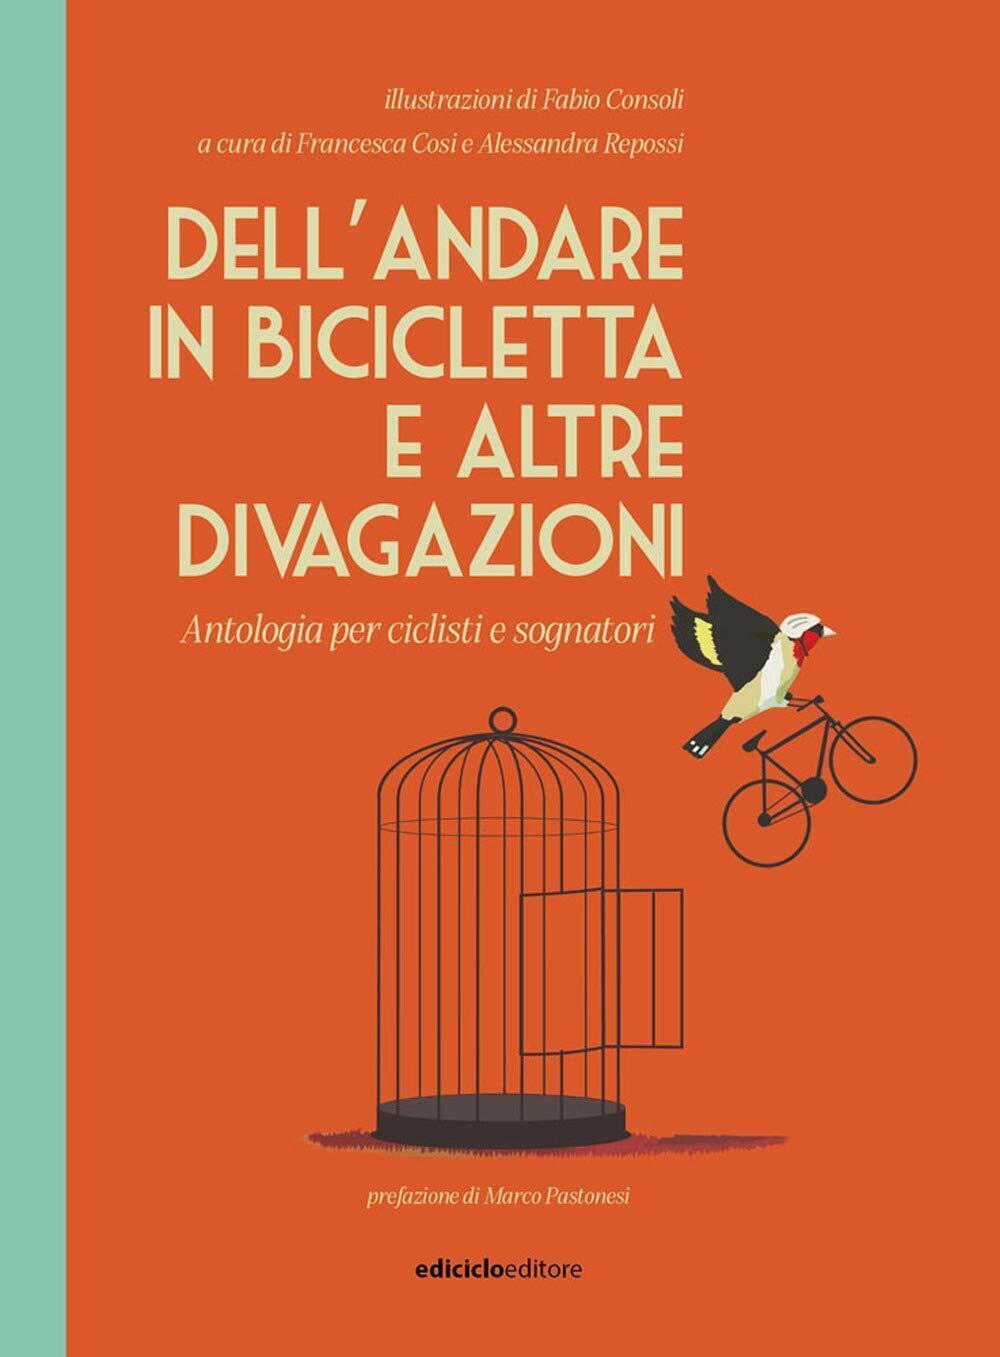 Dell'andare in bicicletta e altre divagazioni - Repossi - Ediciclo, 2020